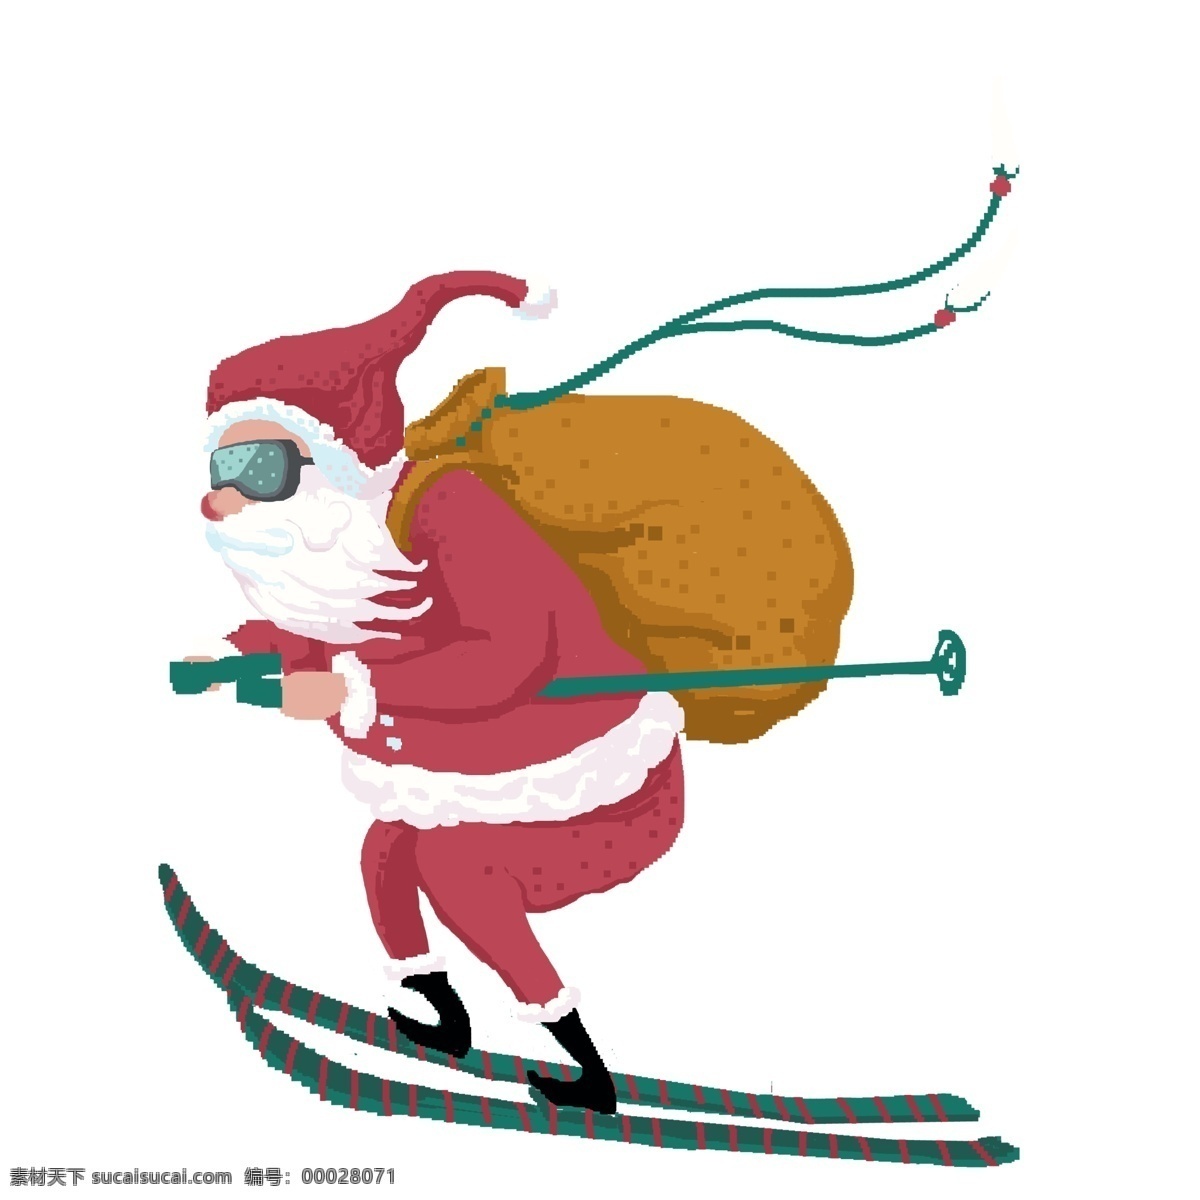 可爱 滑雪 圣诞老人 年代 复古 像素 化 商用 元素 卡通 创意 插画 圣诞节 像素化